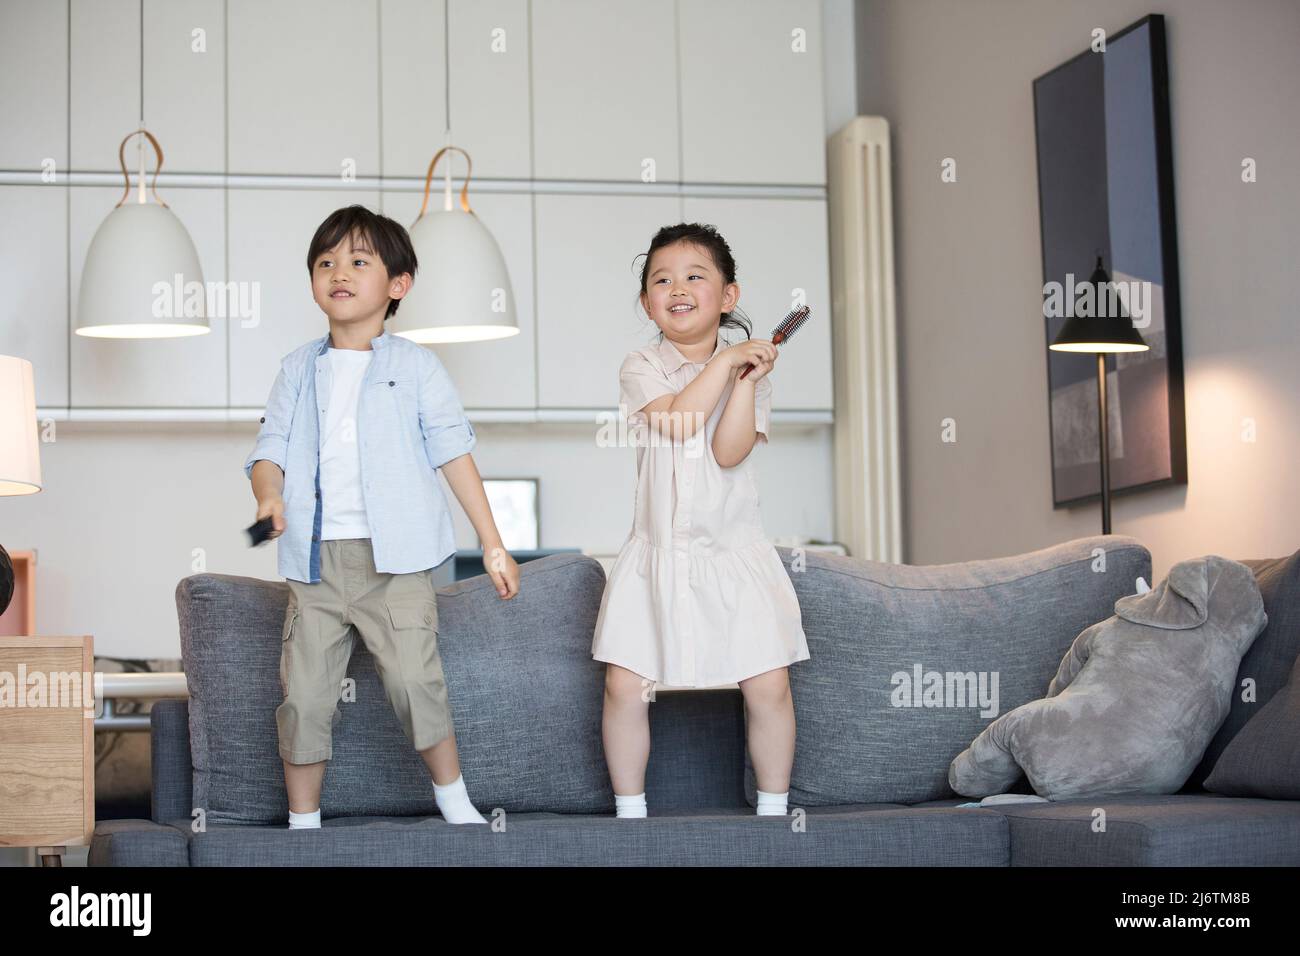 Una bambina e un ragazzino cantano sul divano con un pettine che funge da microfono - foto di scorta Foto Stock